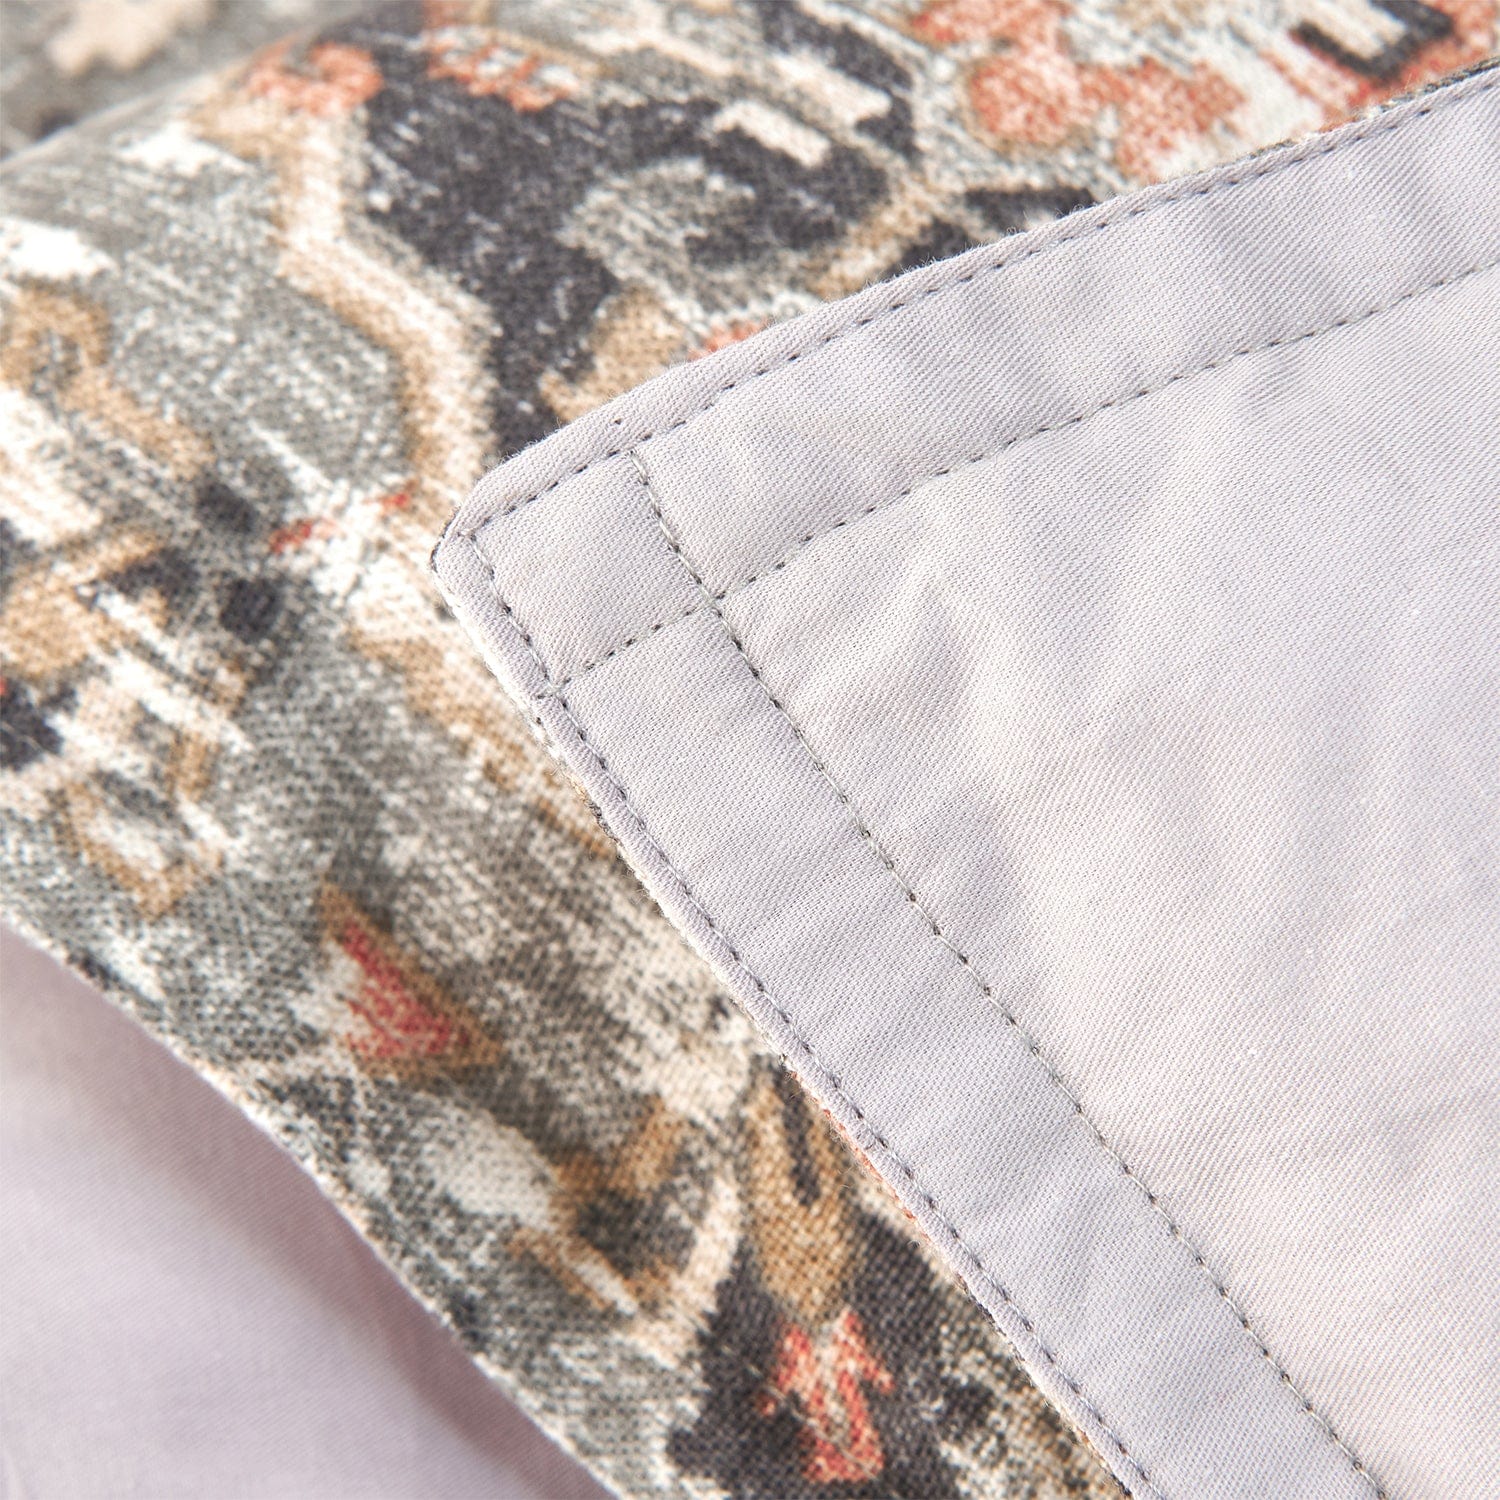 Carmen Kilim Bedding Set Comforter / Duvet Cover